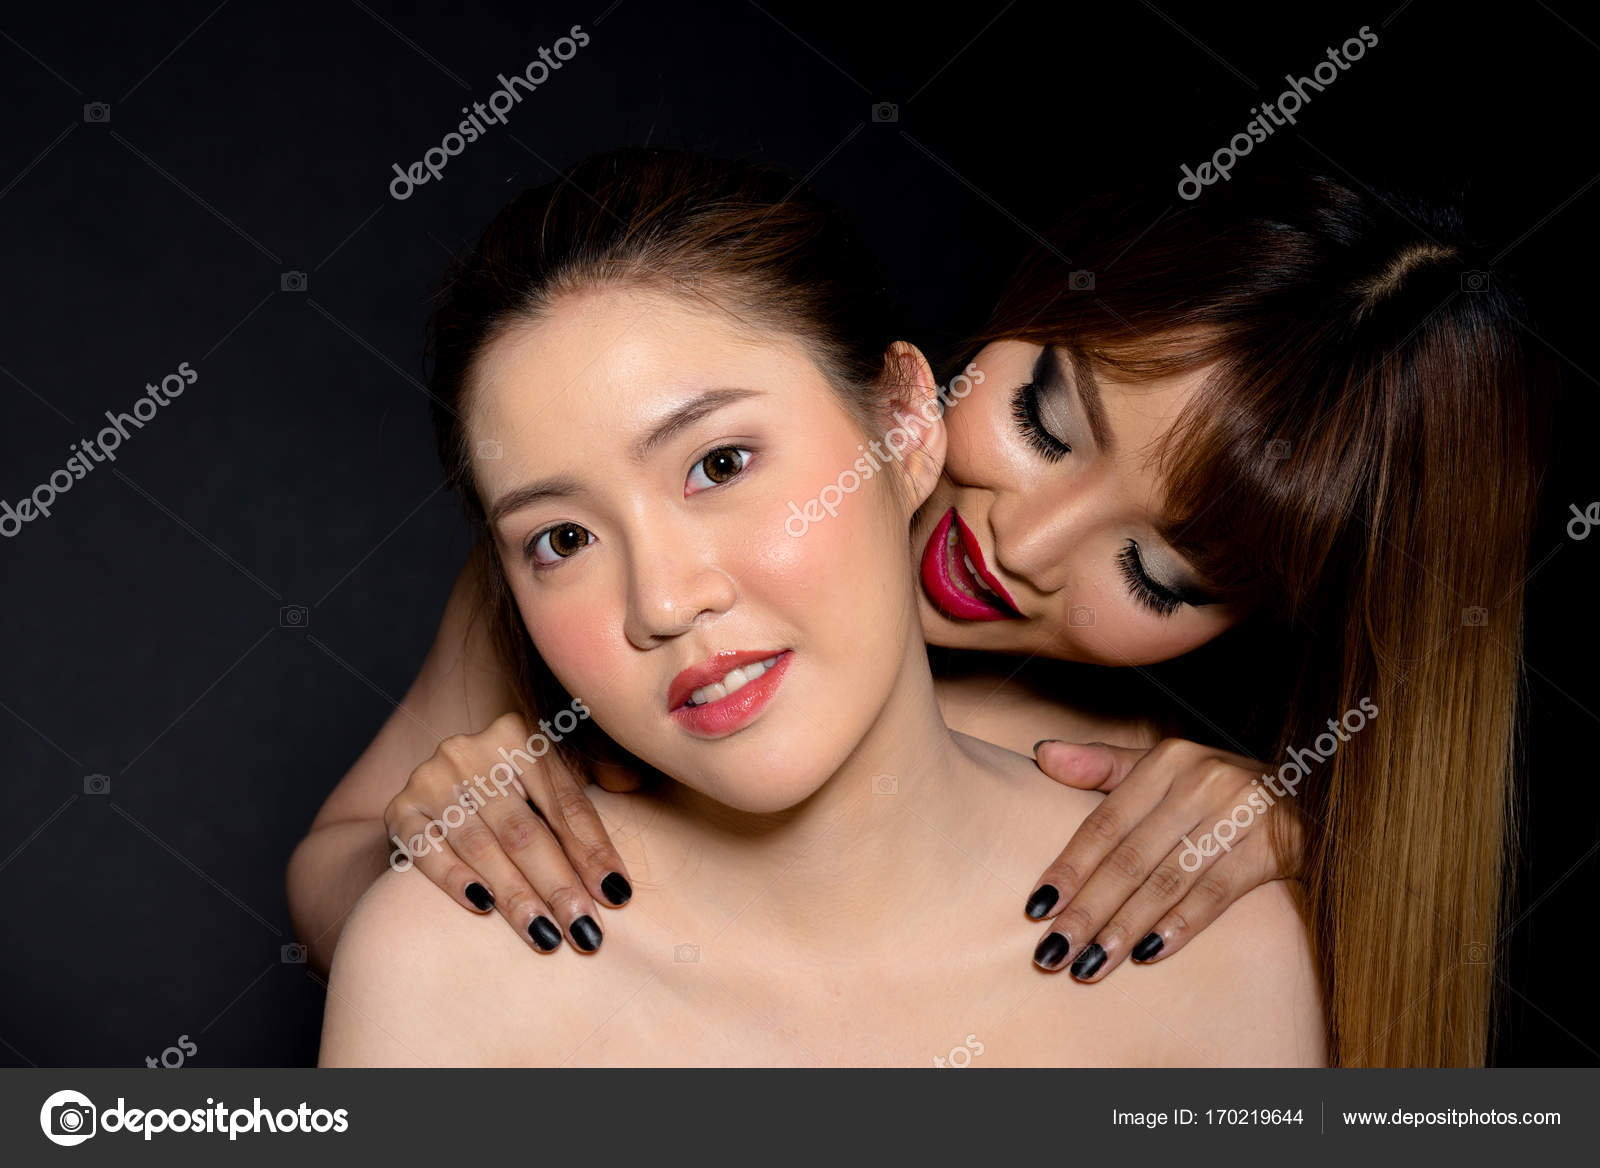 fekete leszbikusok csók az ágyban fekete leszbikus barátnők